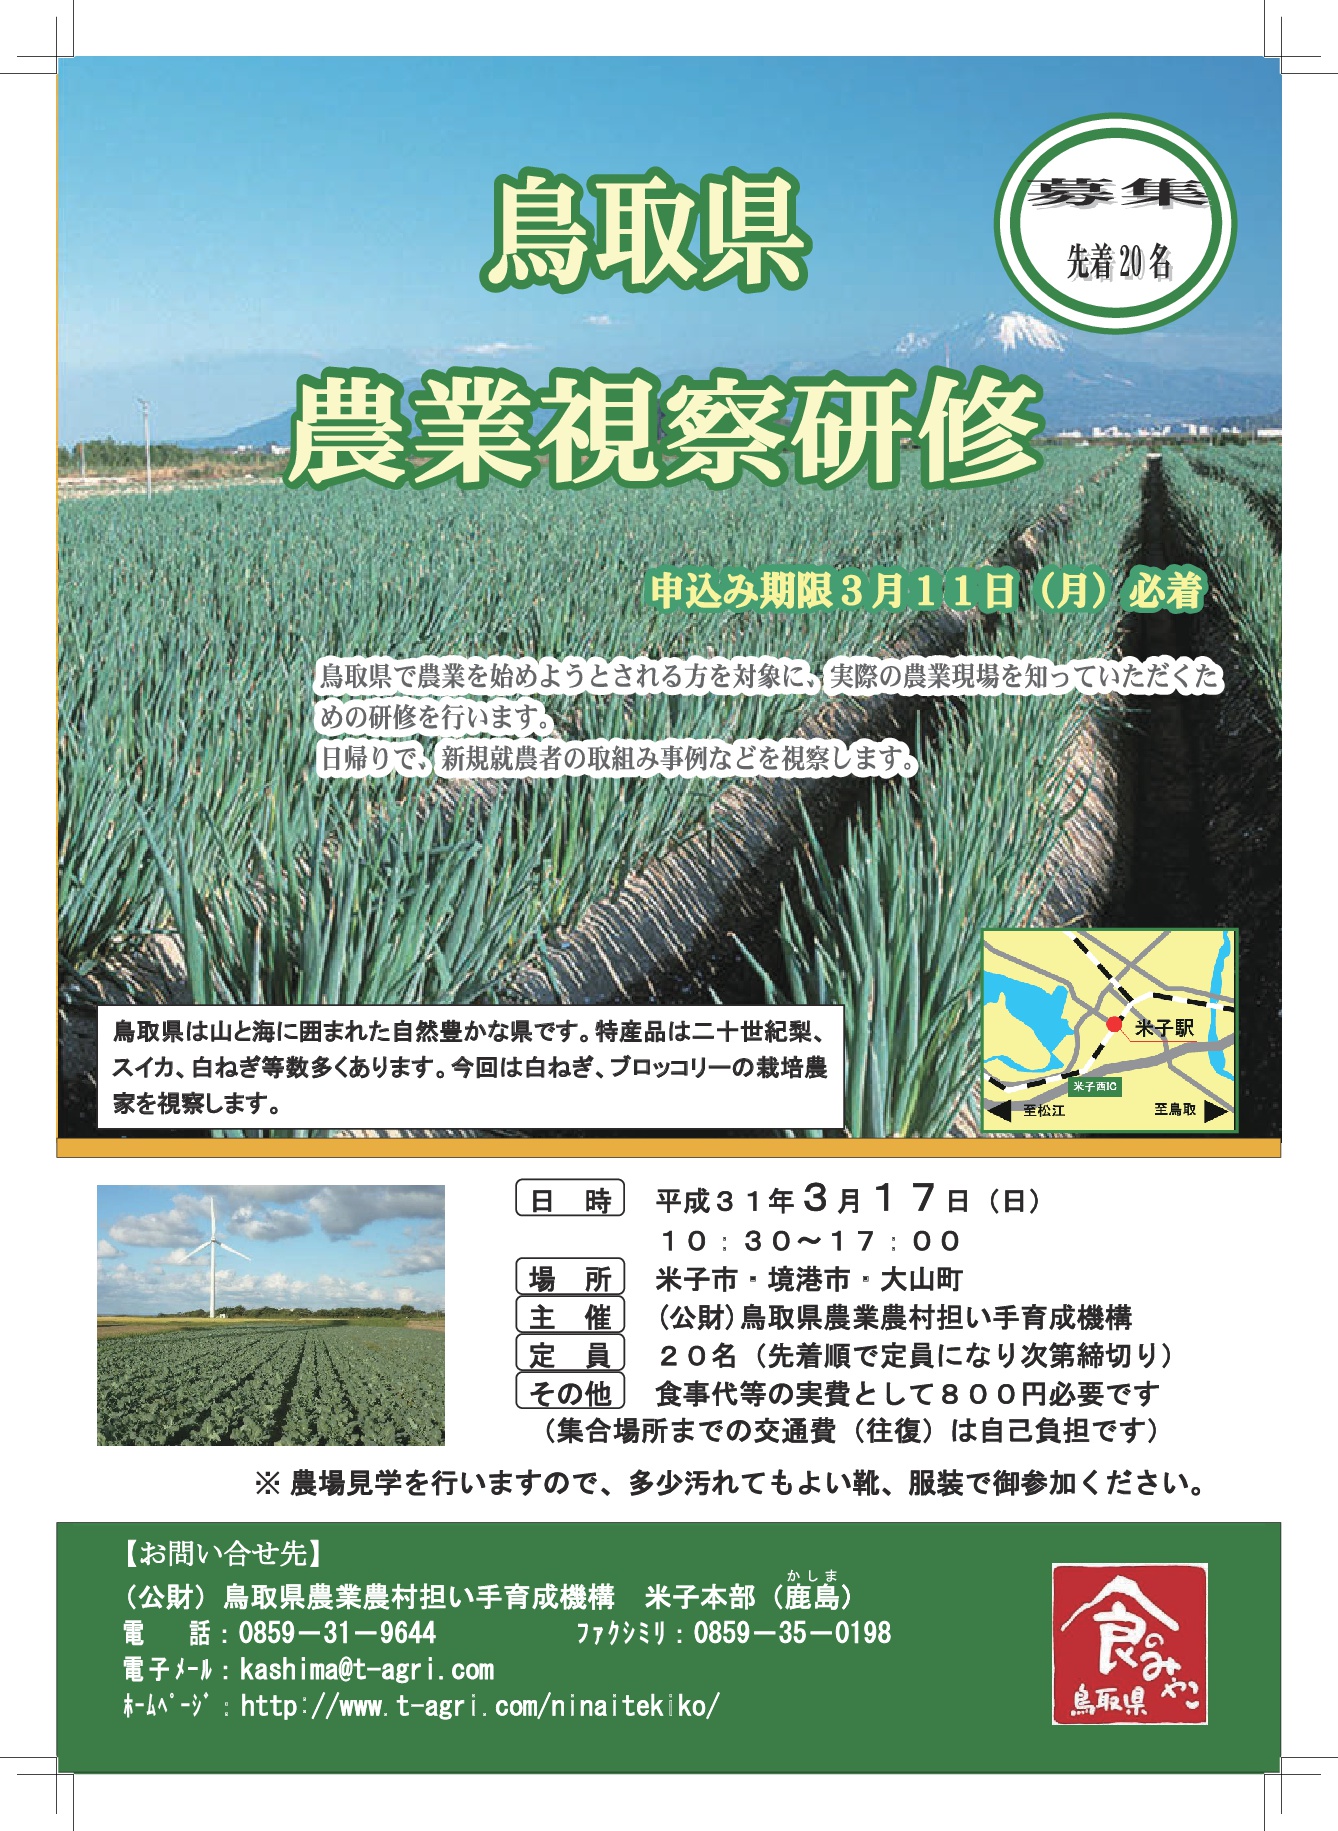 ☆★☆鳥取県農業視察研修を実施します☆★☆ | 移住関連イベント情報